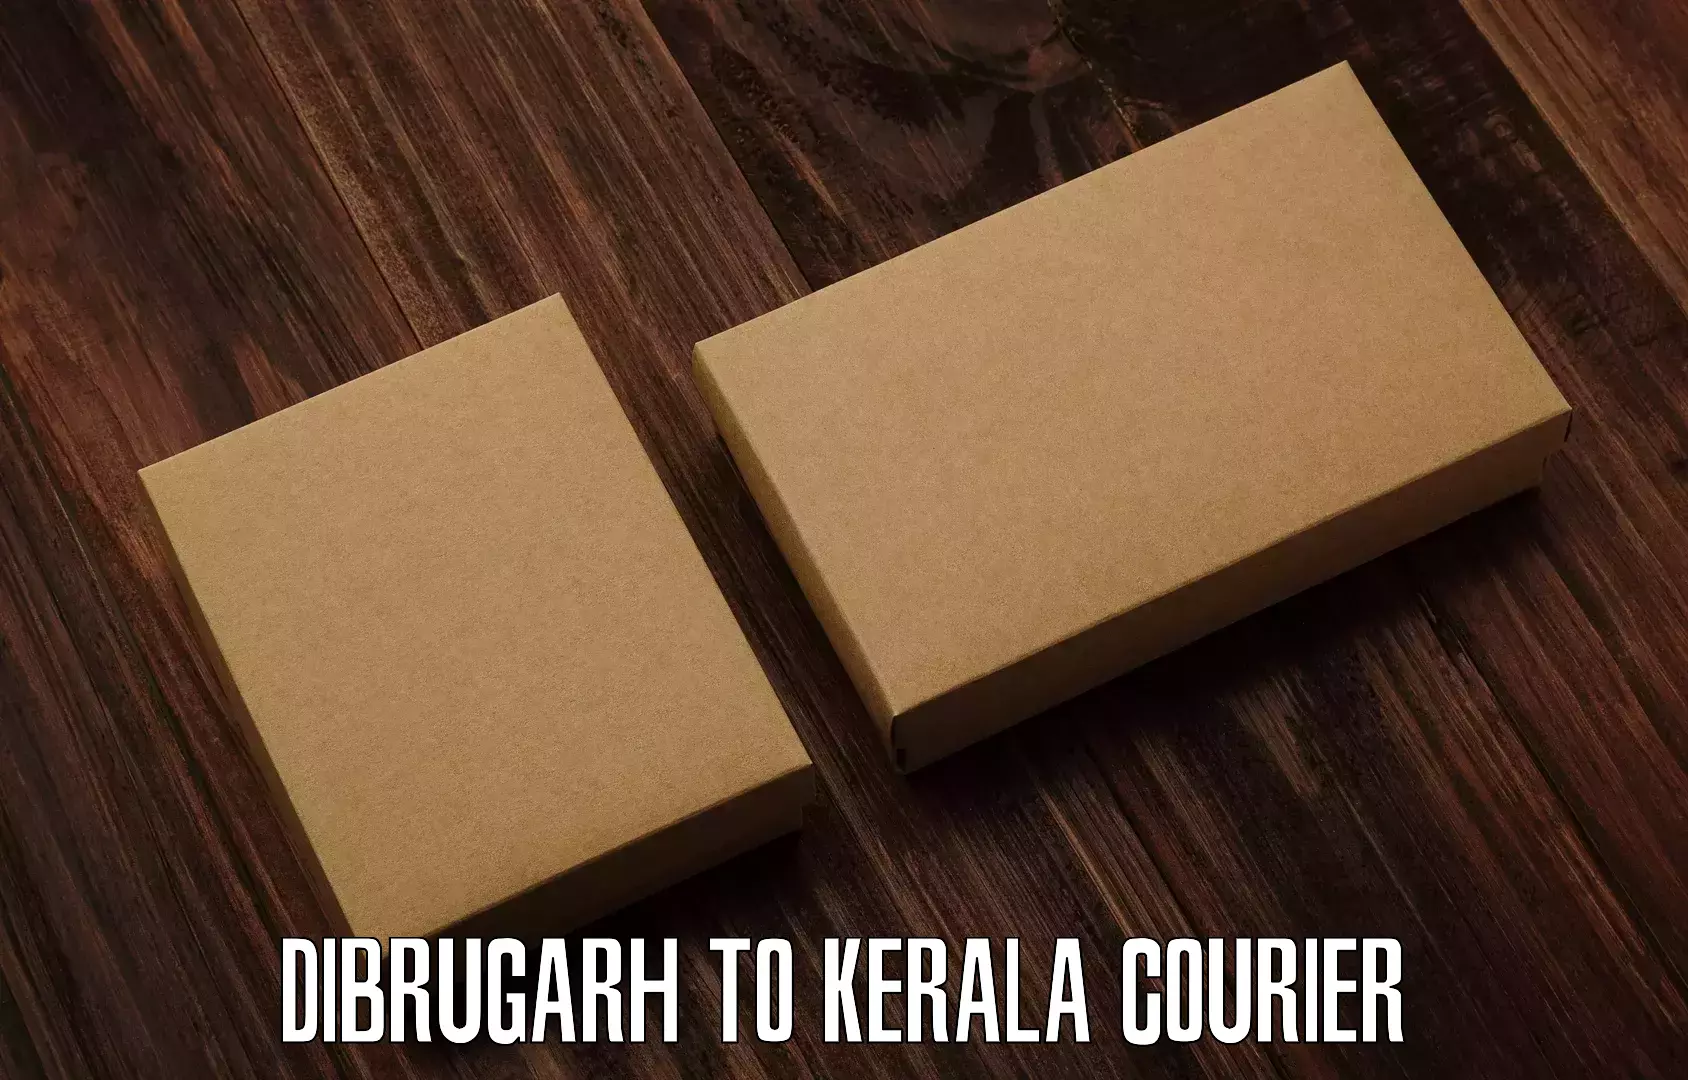 Efficient cargo handling Dibrugarh to Payyanur